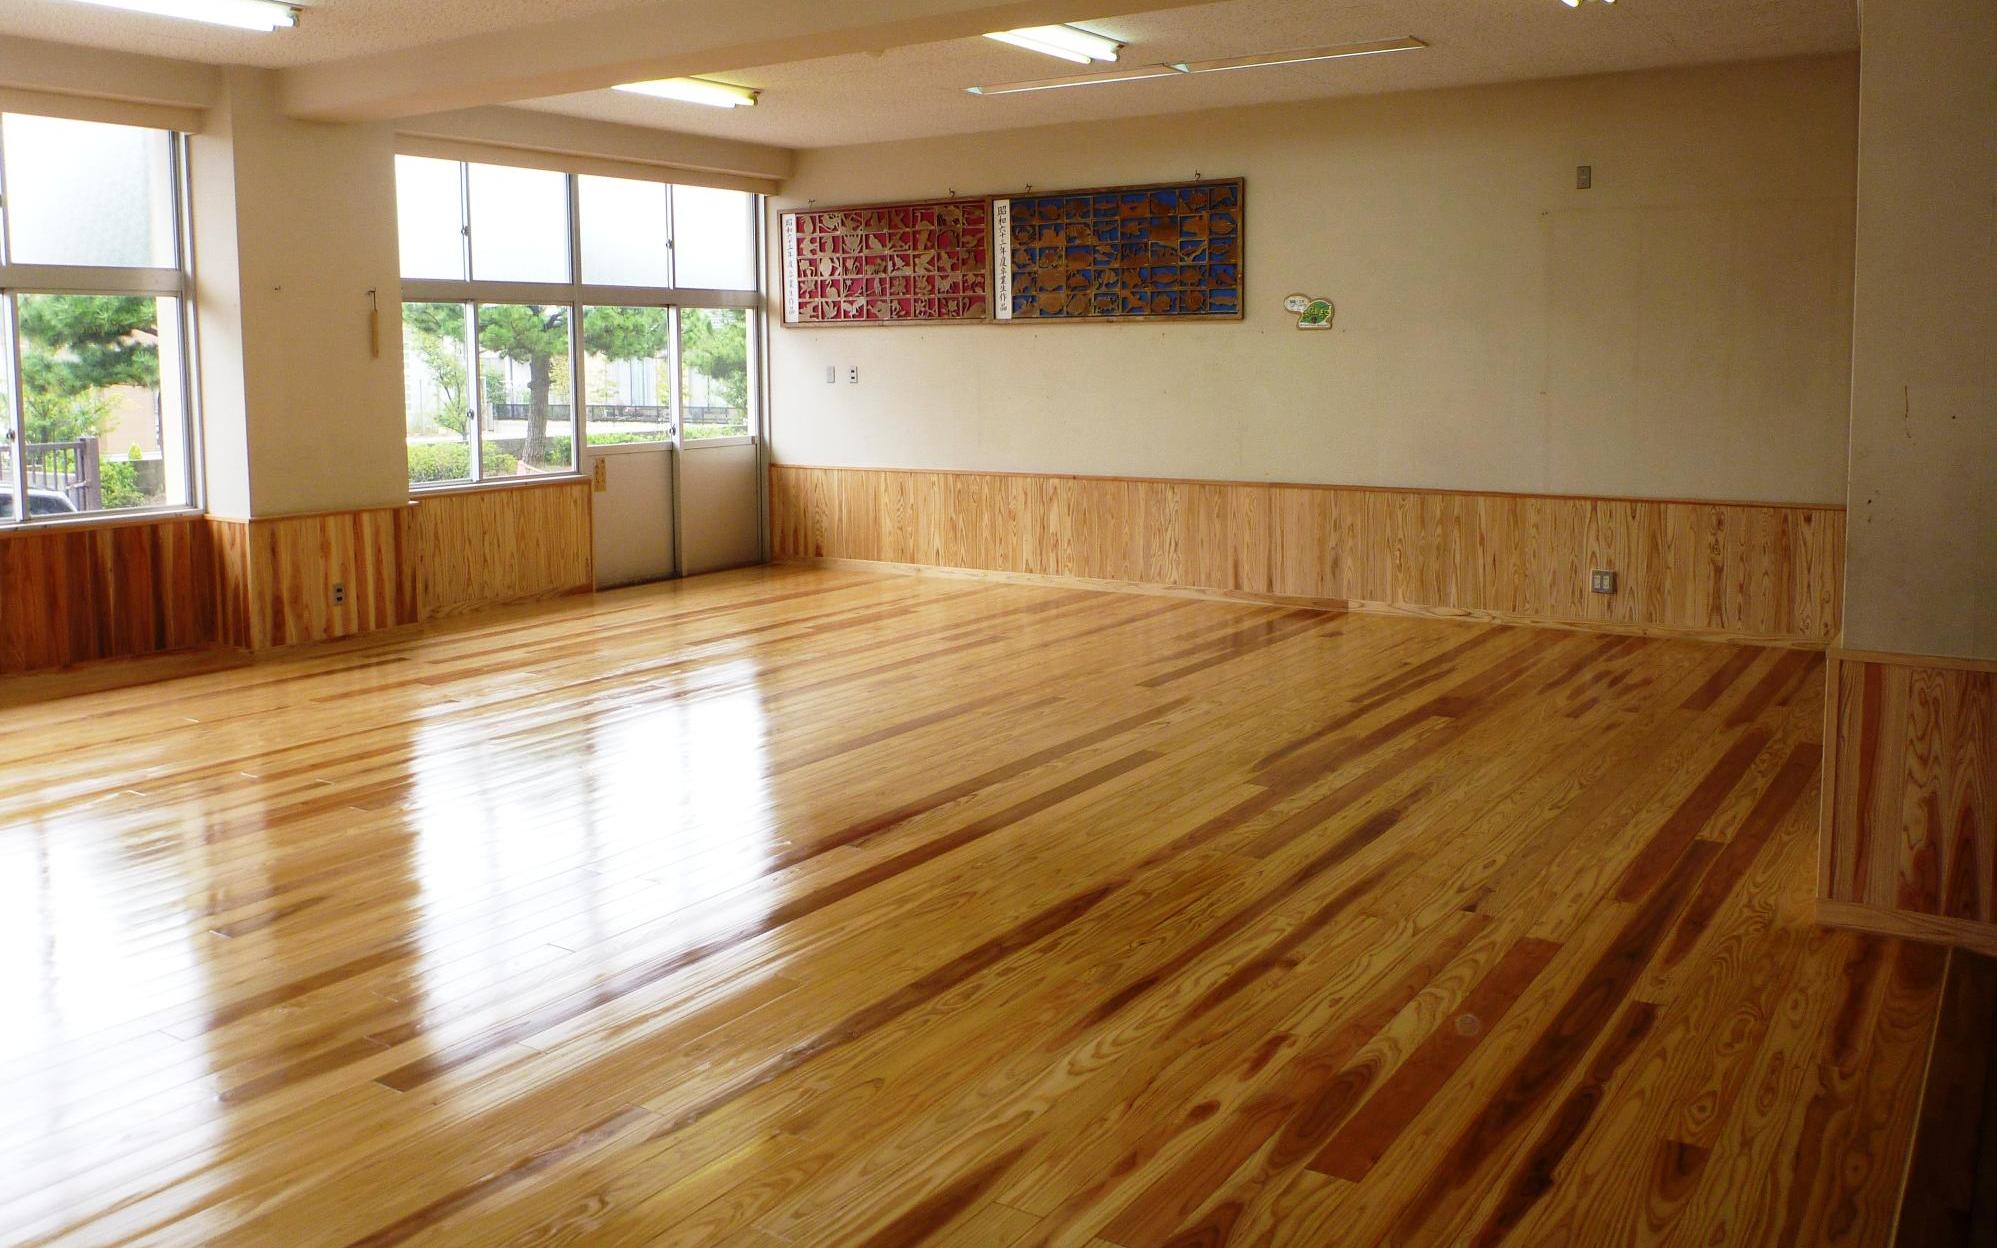 教室の床一面に真新しい板張りの床がある写真